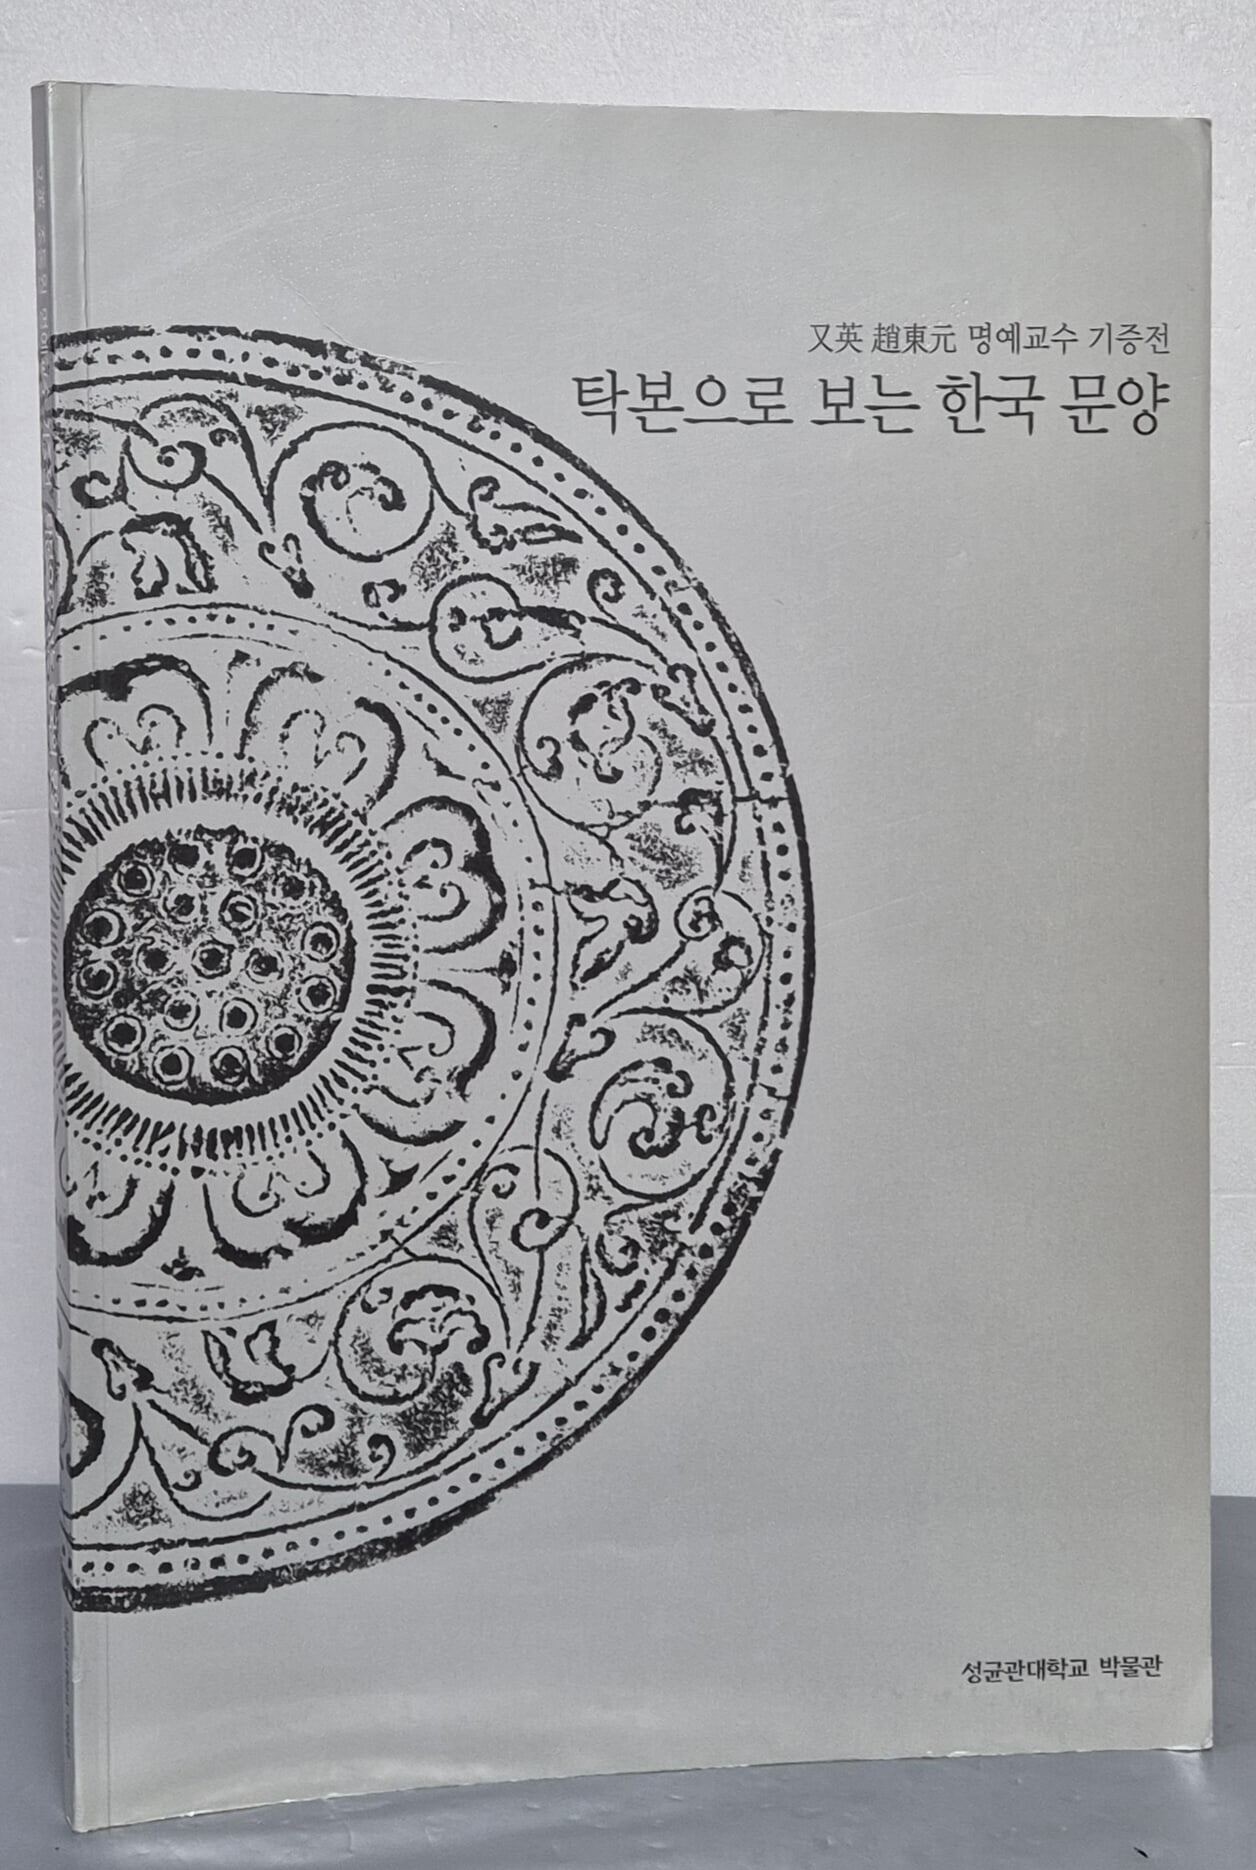 탁본으로 보는 한국 문양